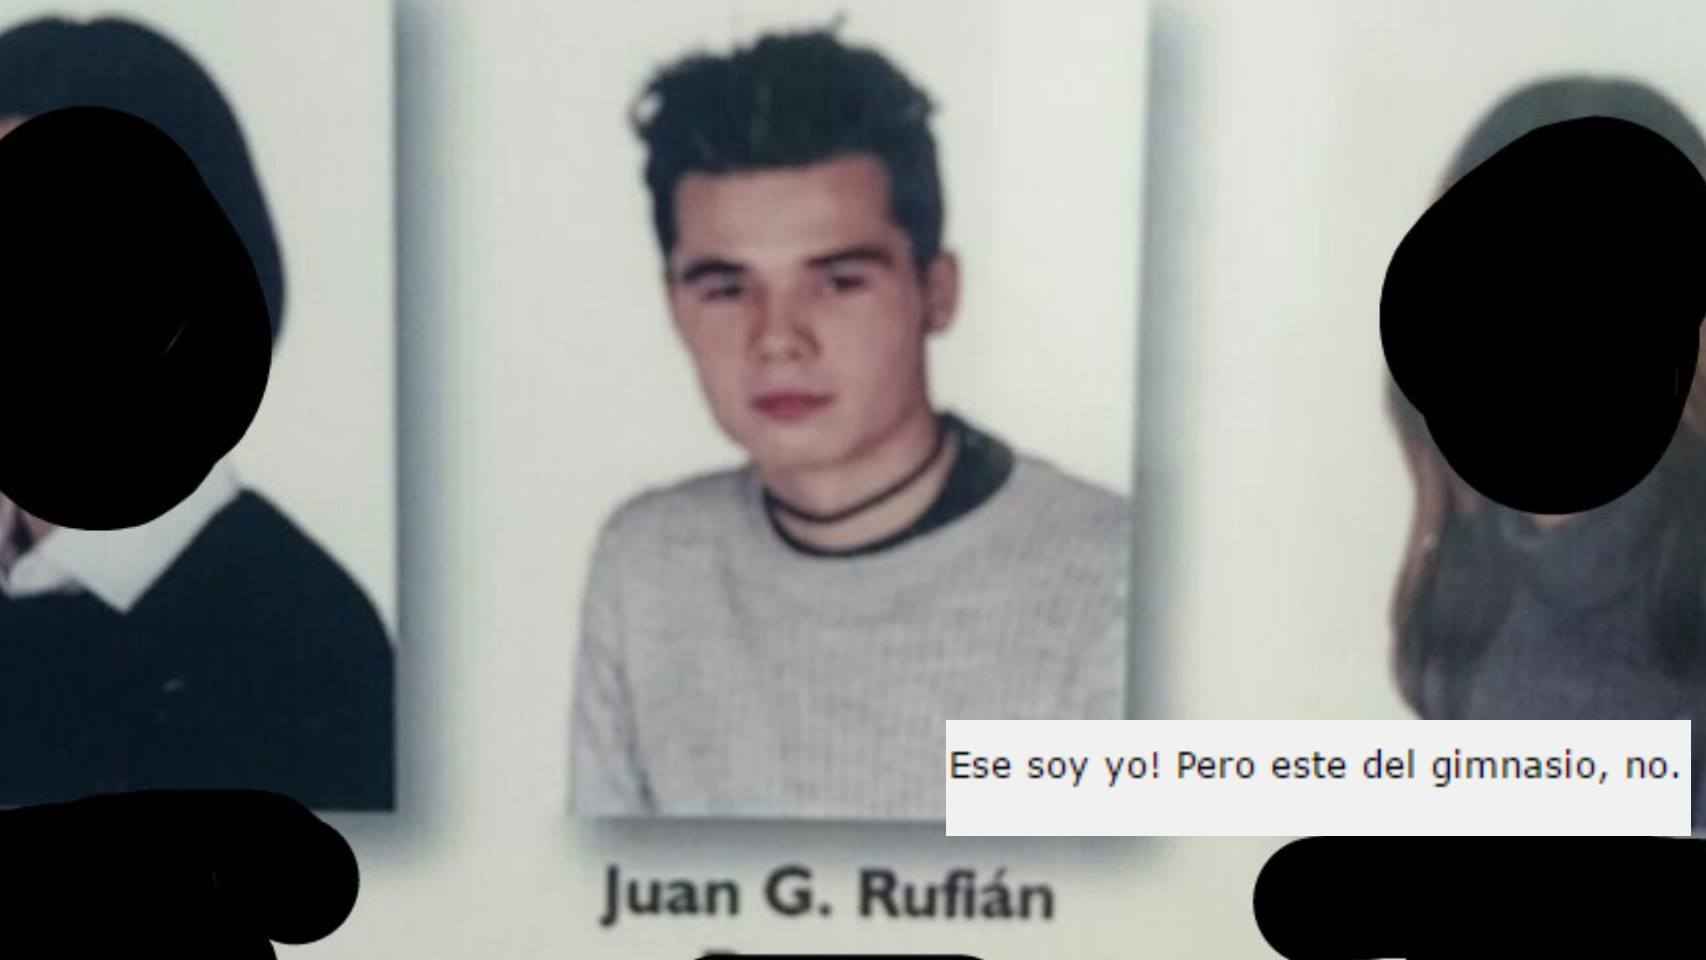 Rufián reconoció una foto escolar desenterrada por un forero, pero negó haber sido pillado en el gimnasio.